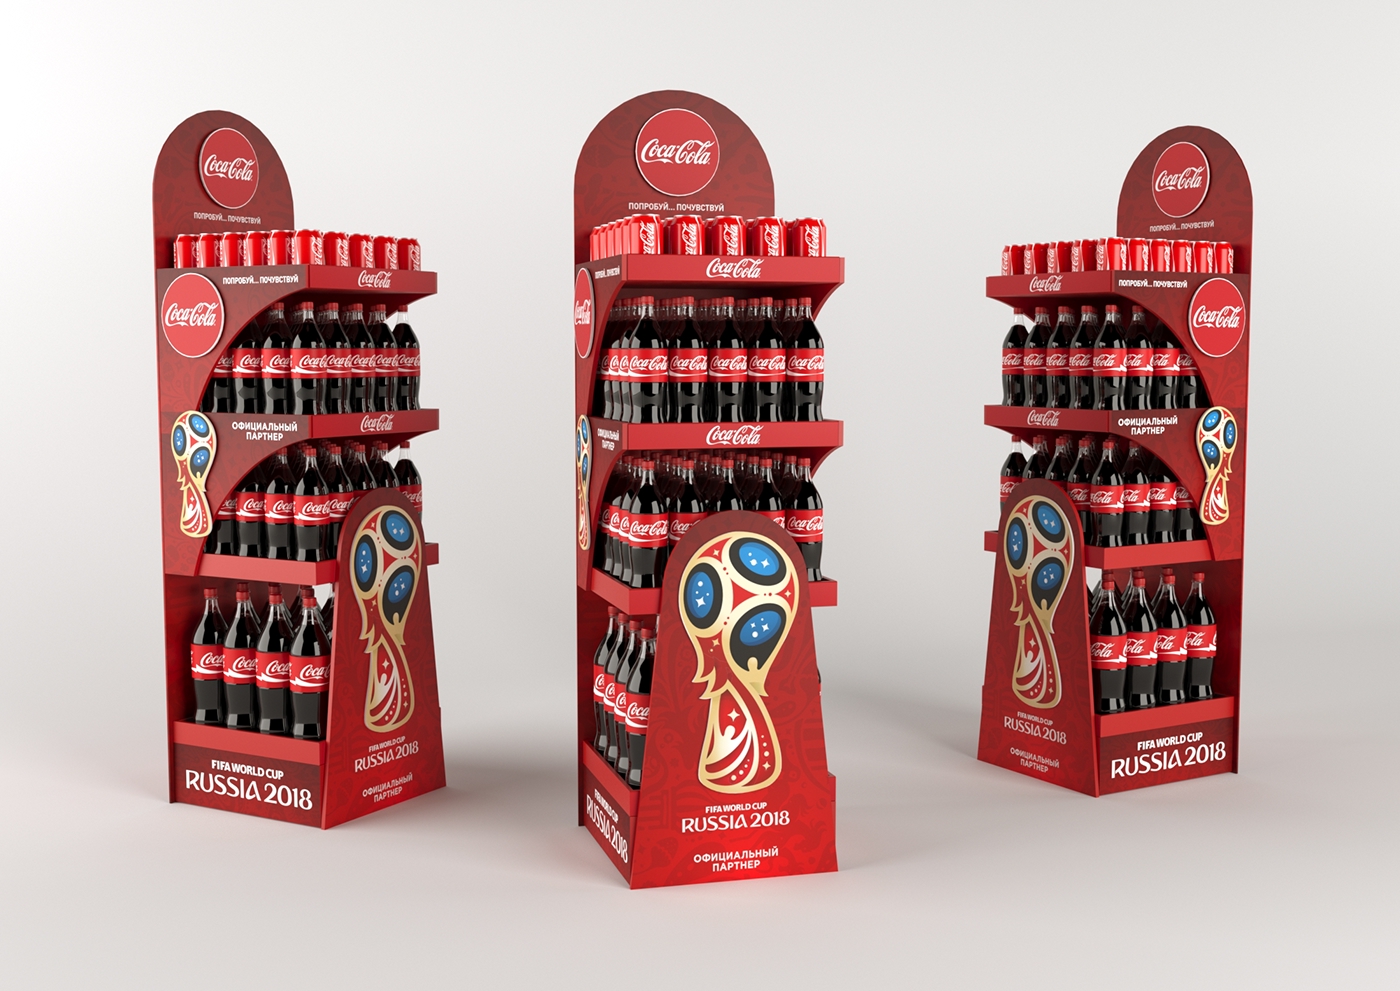 Coca Cola pos posm pop Maximov WorldCup Russia 2018 FIFA